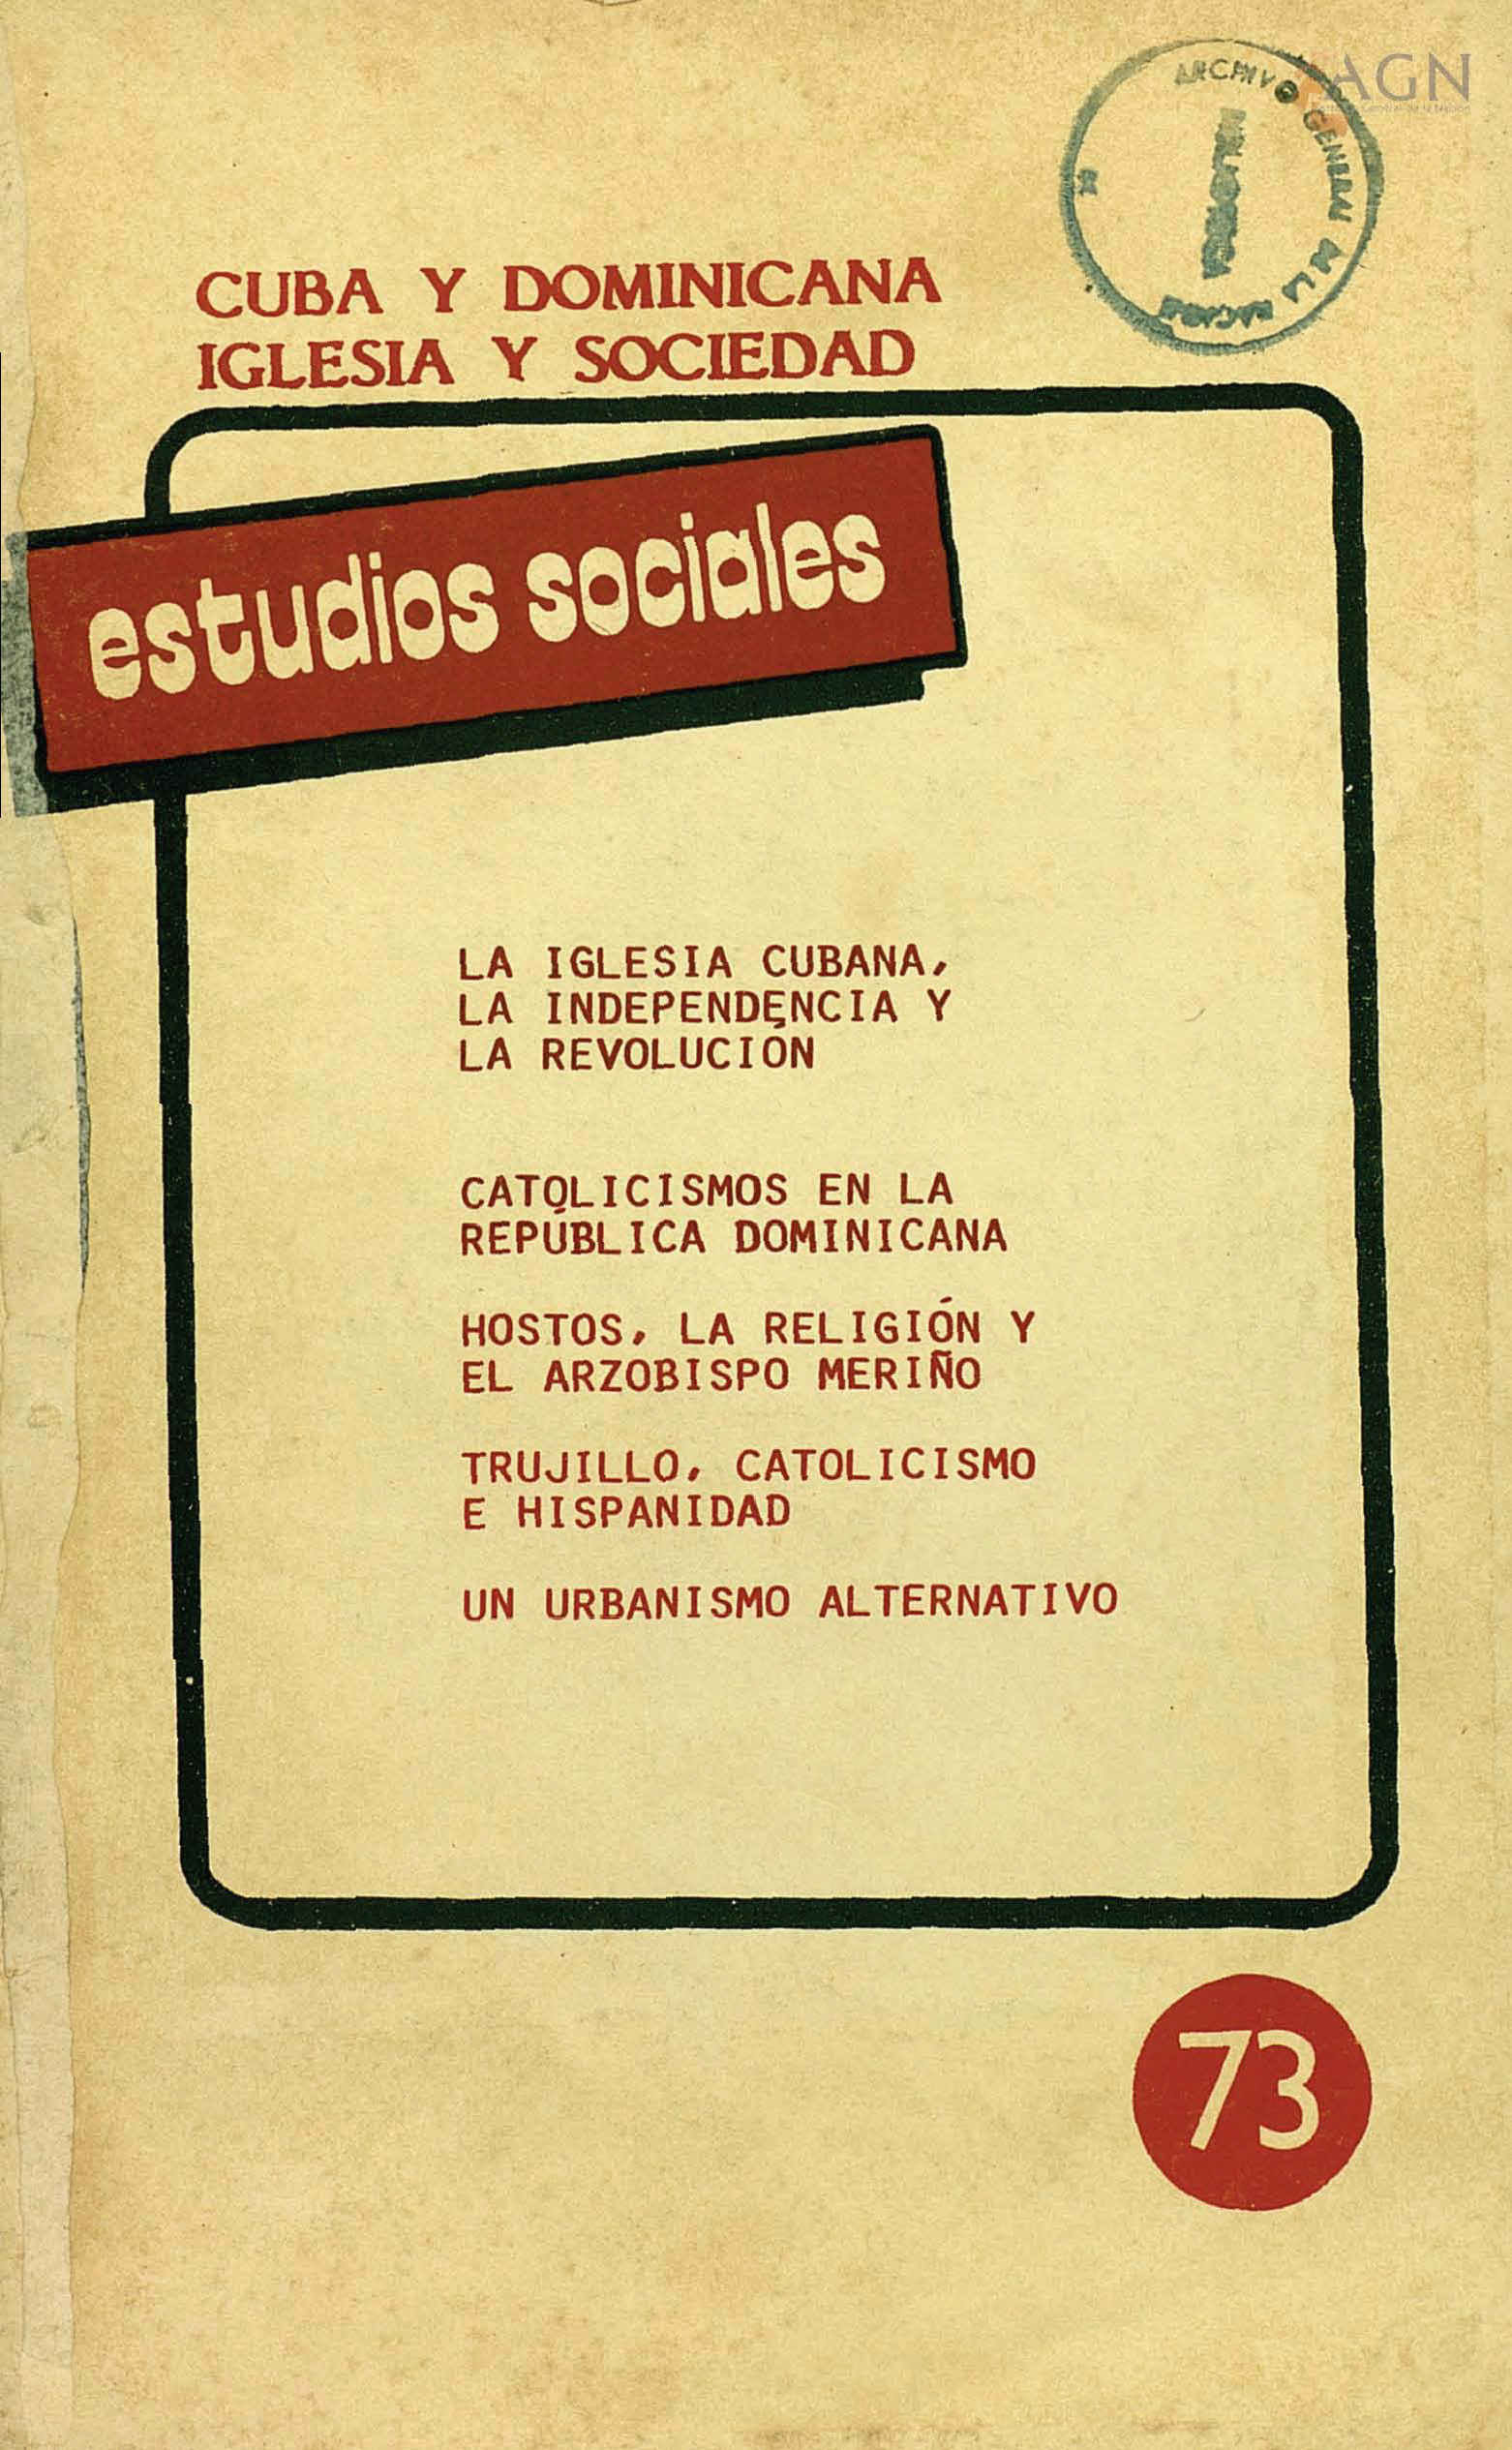 						Ver Vol. 21 Núm. 73 (1988): Cuba y Dominicana. Iglesia y Sociedad
					